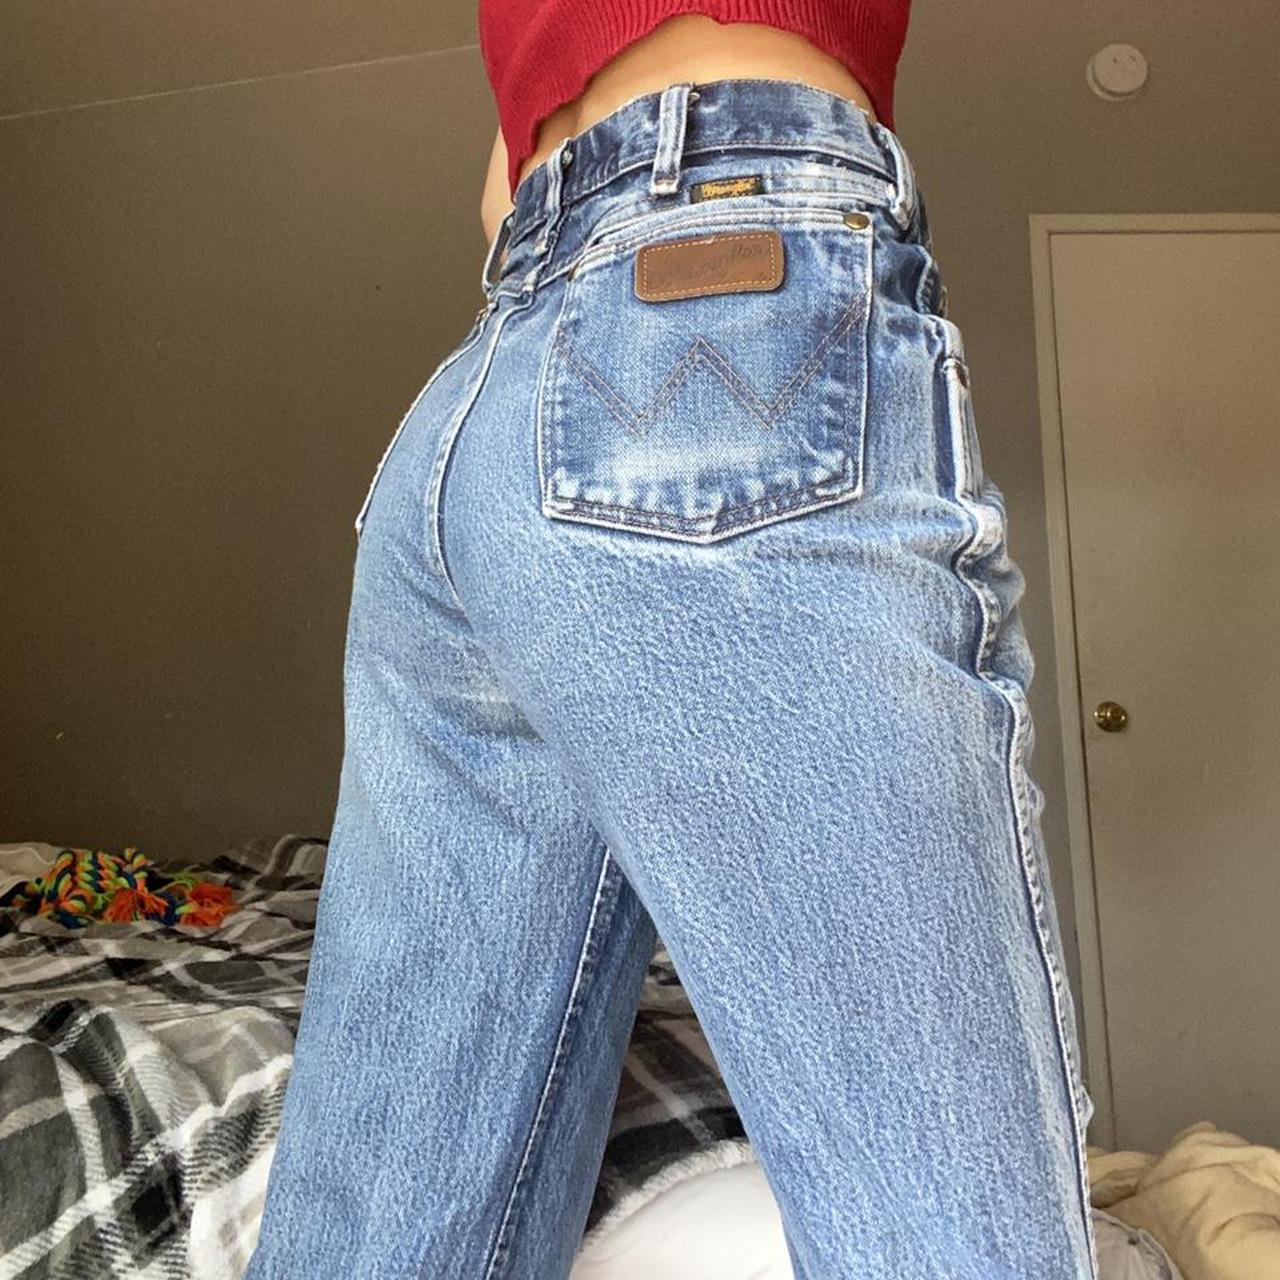 Gorgeous vintage wrangler jeans. Women's fit jeans - Depop